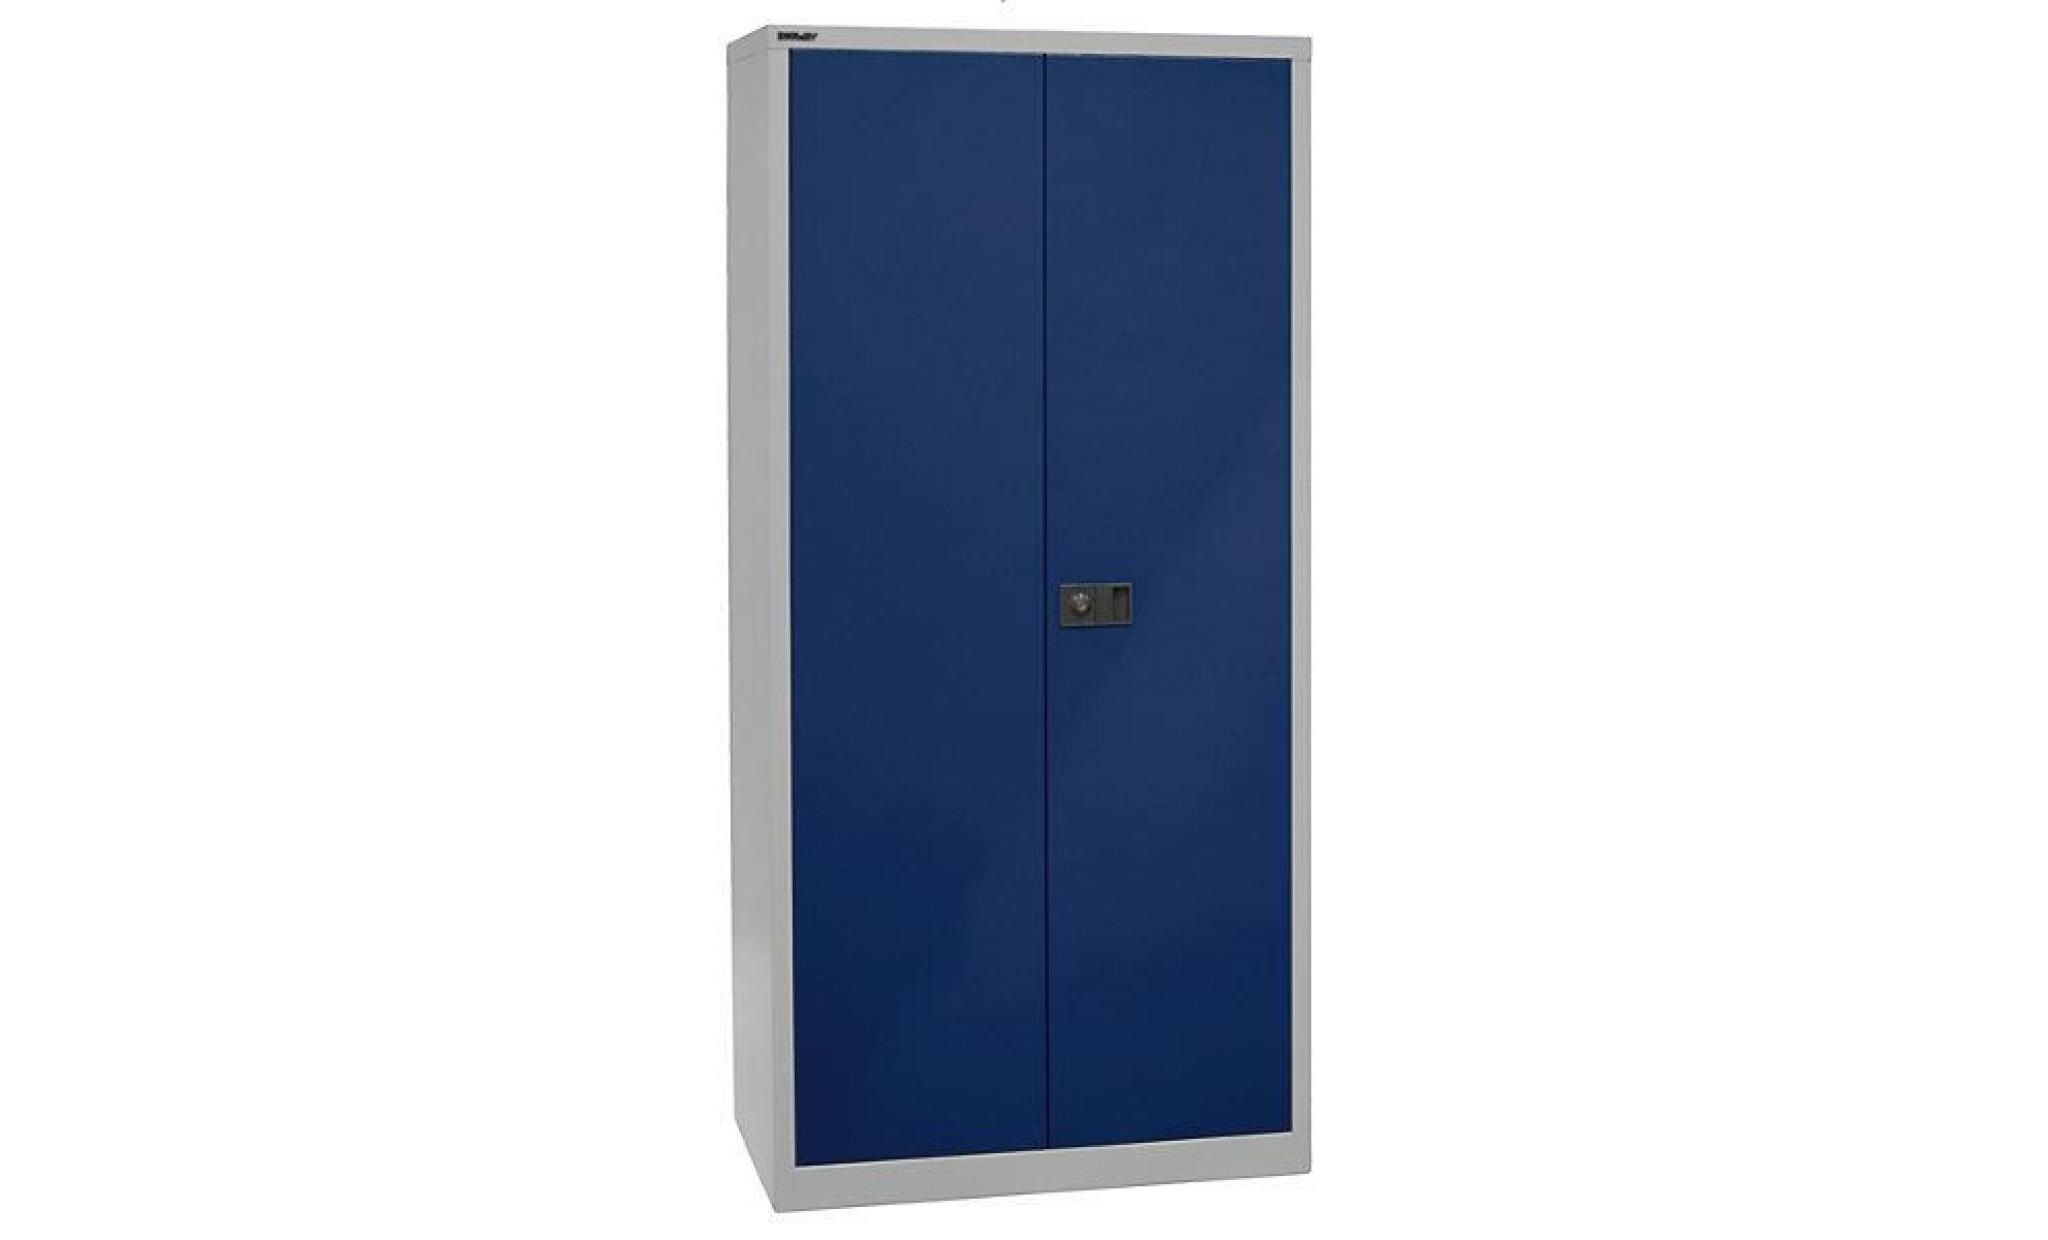 bisley armoire à portes battantes universal   4 tablettes galvanisées, 5 hauteurs de classeurs profondeur 500 mm, gris clair / bleu